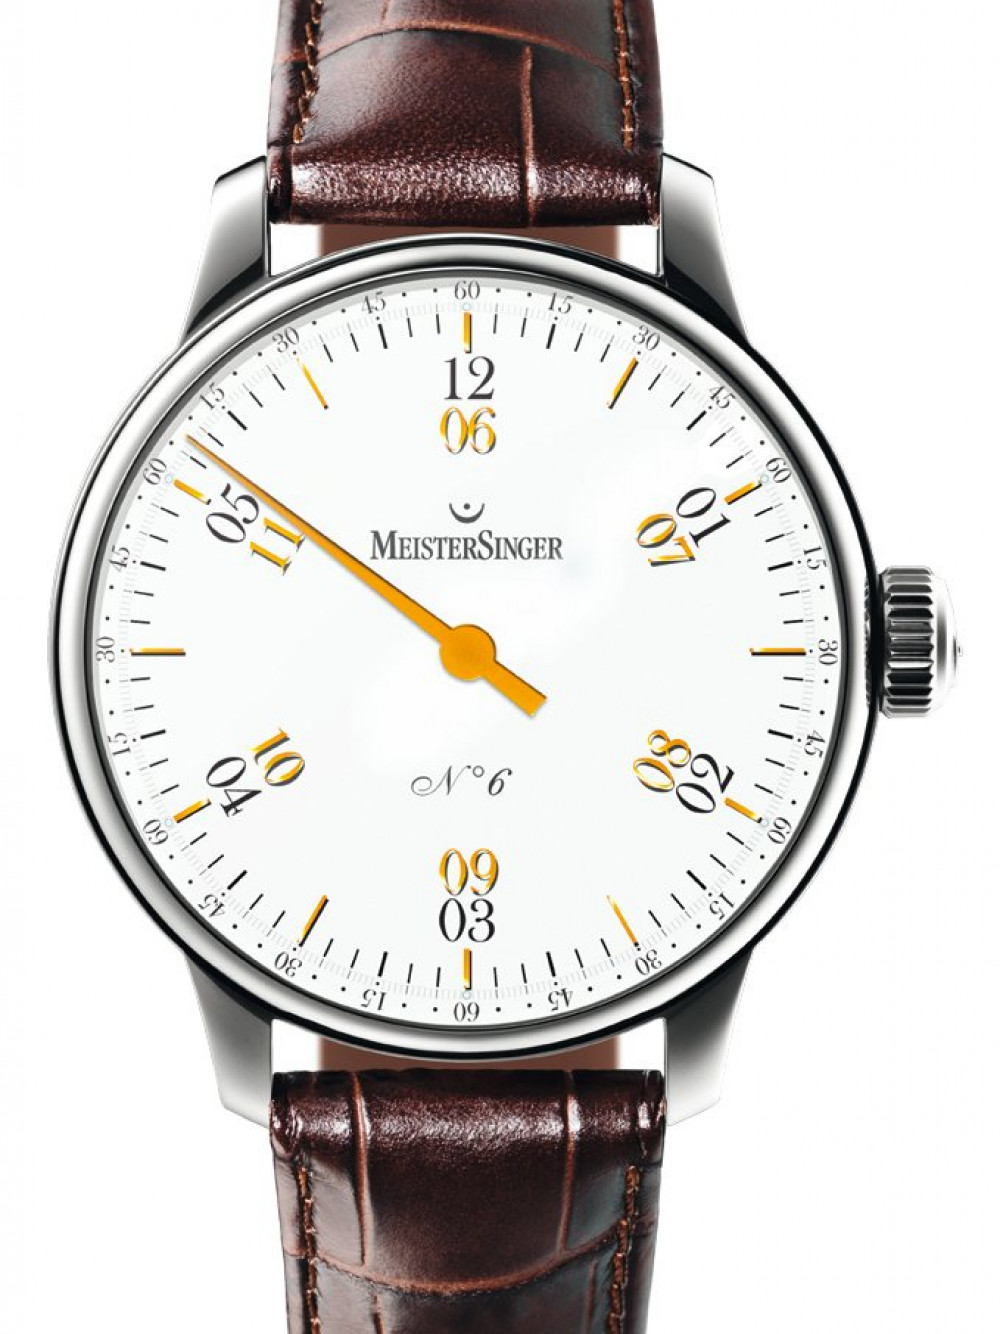 Zegarek firmy MeisterSinger, model N° 06